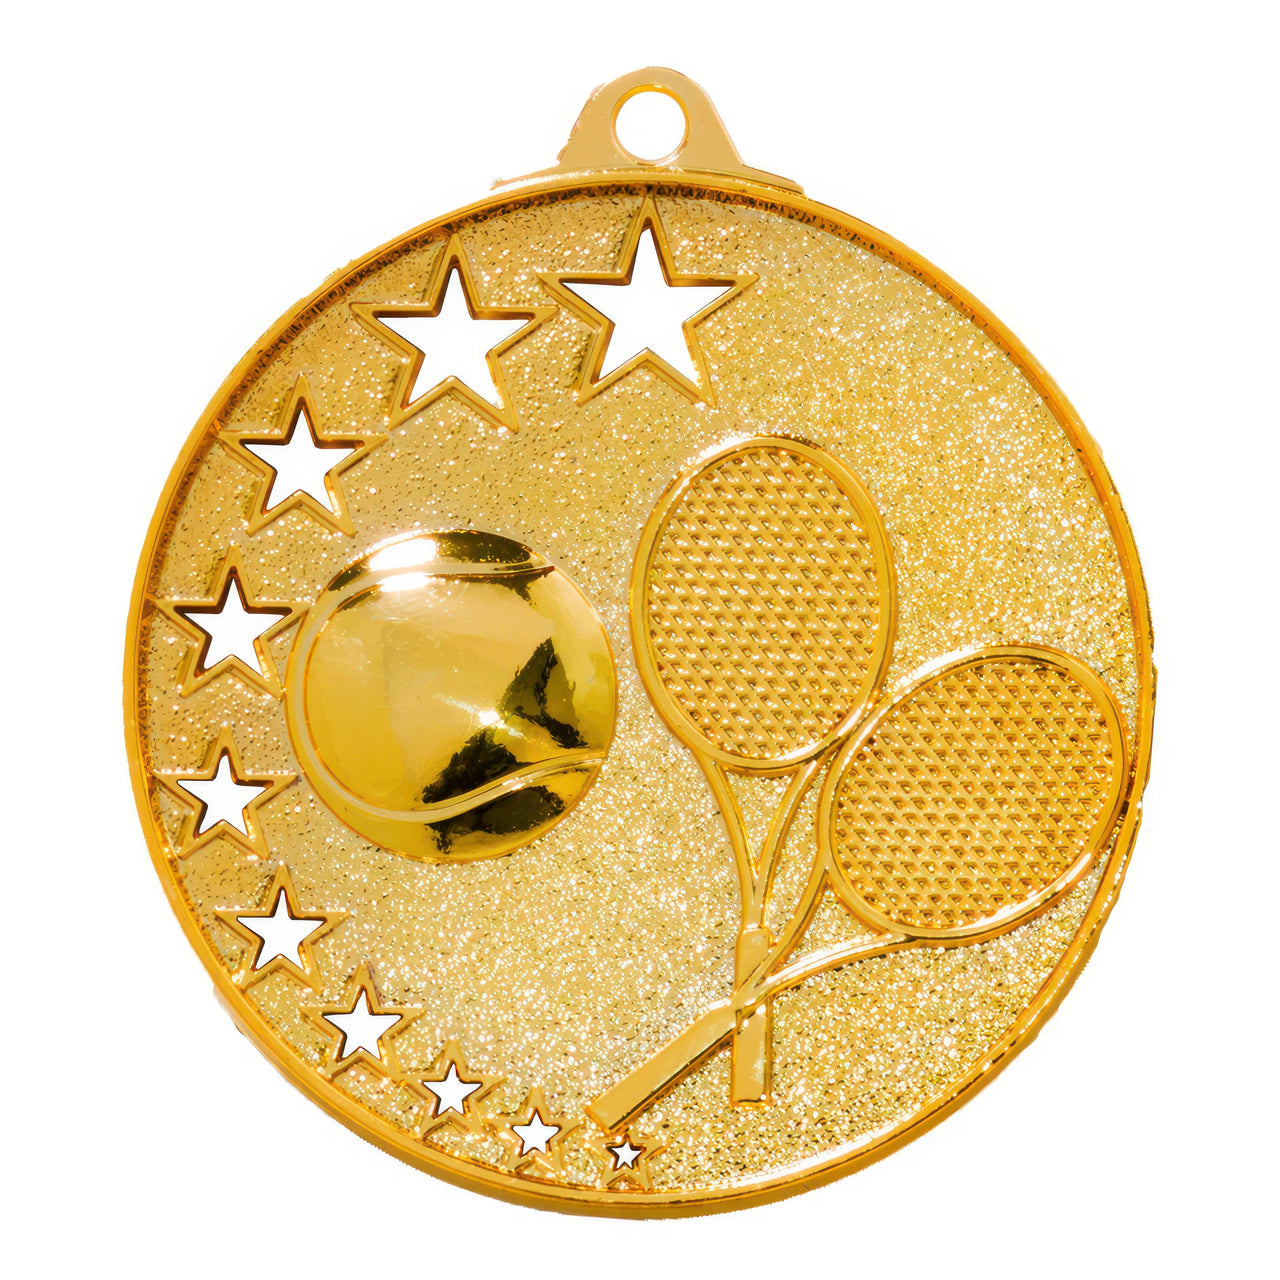 Eine runde Goldmedaille mit einem Tennisball und zwei gekreuzten Tennisschlägern mit Sternen am Rand. Sie weist ein exklusives Design auf und ist aus hochwertigem Material gefertigt: die Tennis-Medaillen Magdeburg 52 mm PK79237.